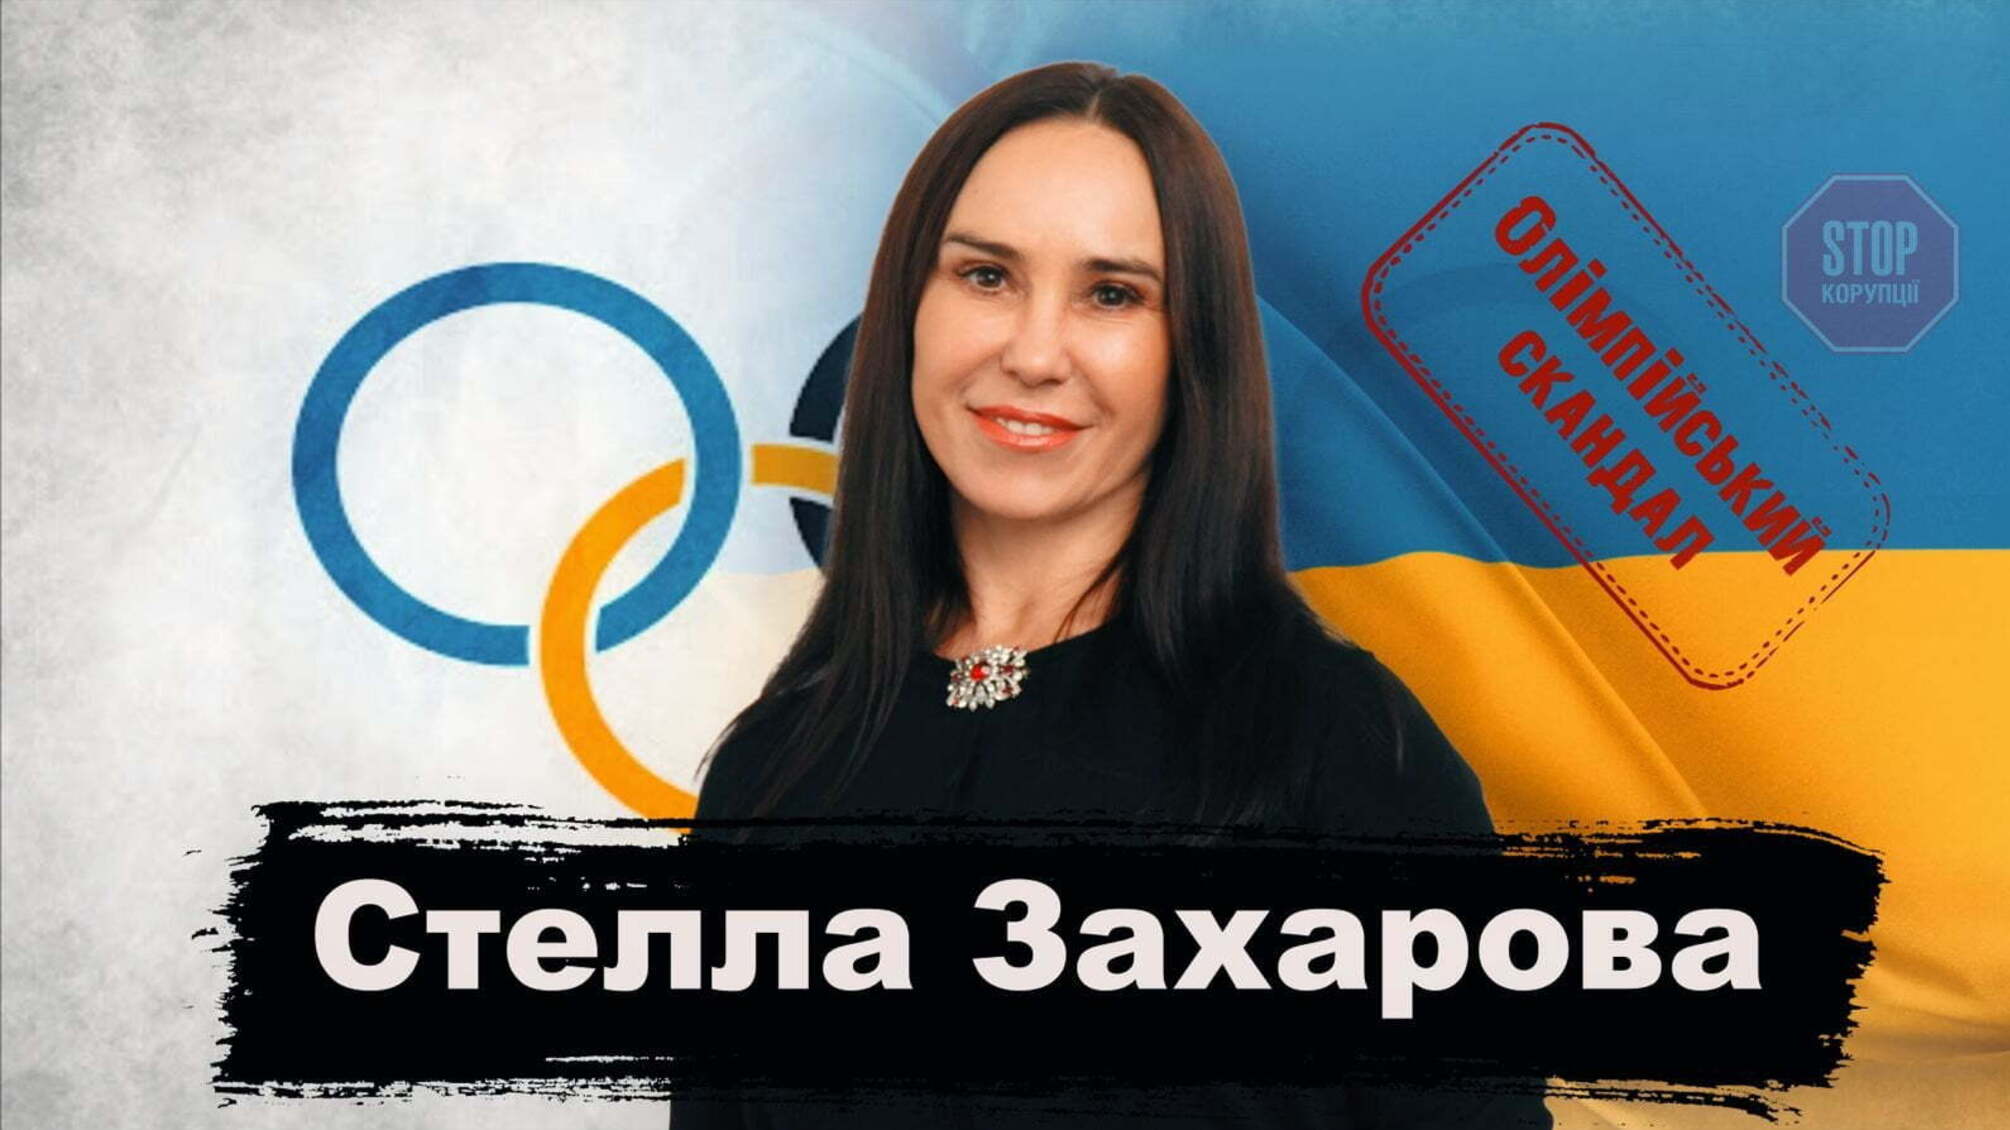 Олимпийский провал, травля спортсменов и унижение от министра: откровенное интервью Стеллы Захаровой